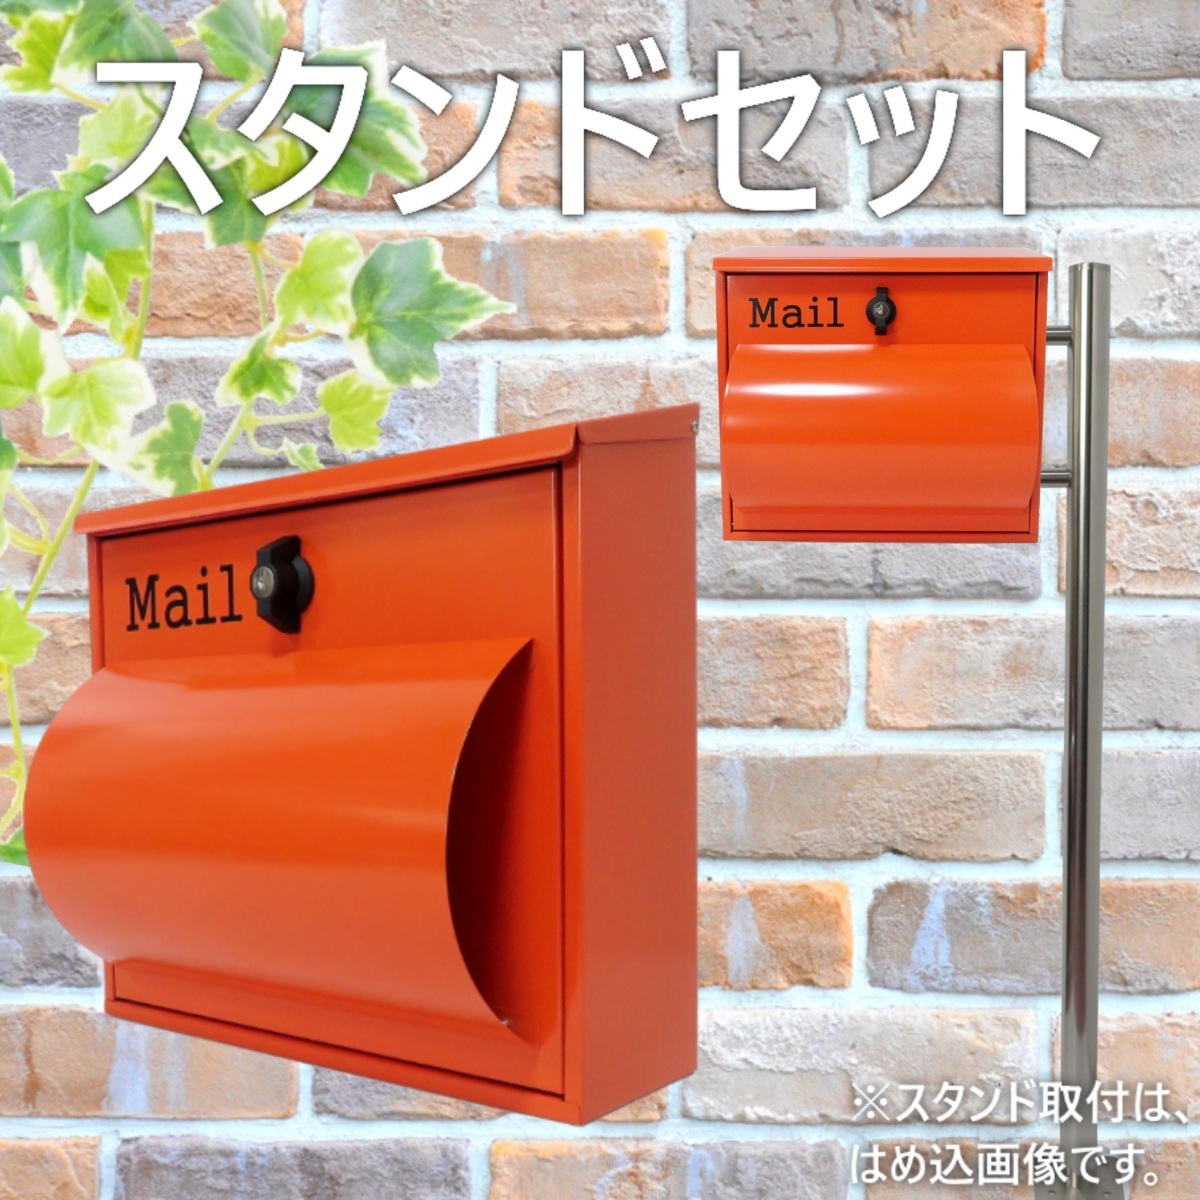 郵便ポスト郵便受けおしゃれ北欧大型鍵付きスタンド型プレミアムステンレスオレンジ色ポストpm281s-pm092